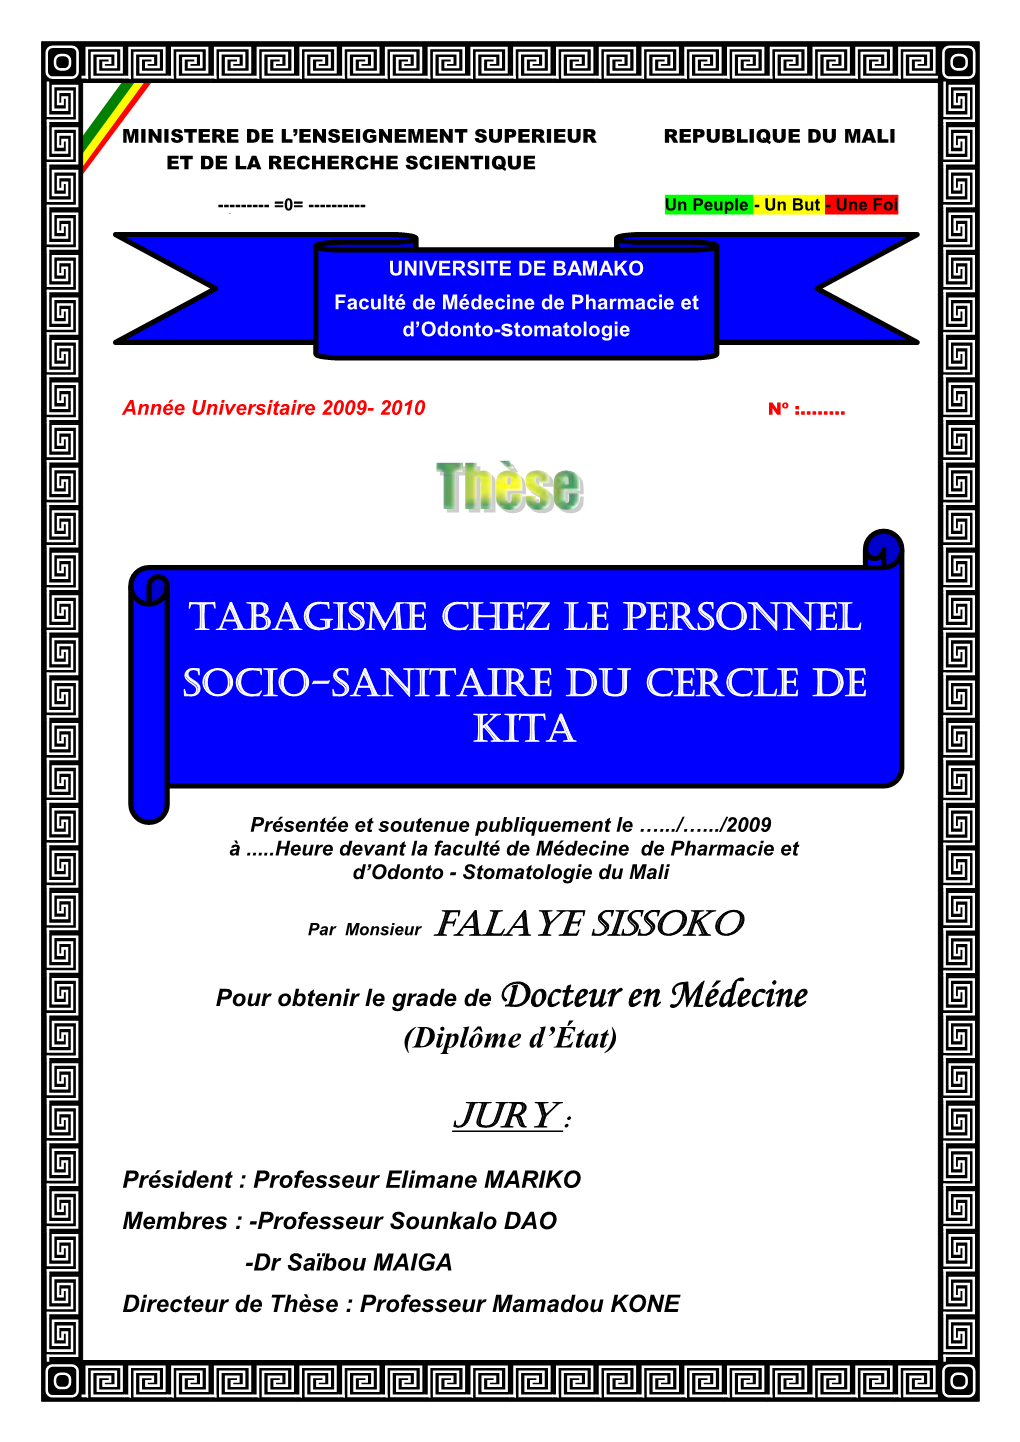 Tabagisme Chez Le Personnel Socio-Sanitaire Du Cercle De Kita